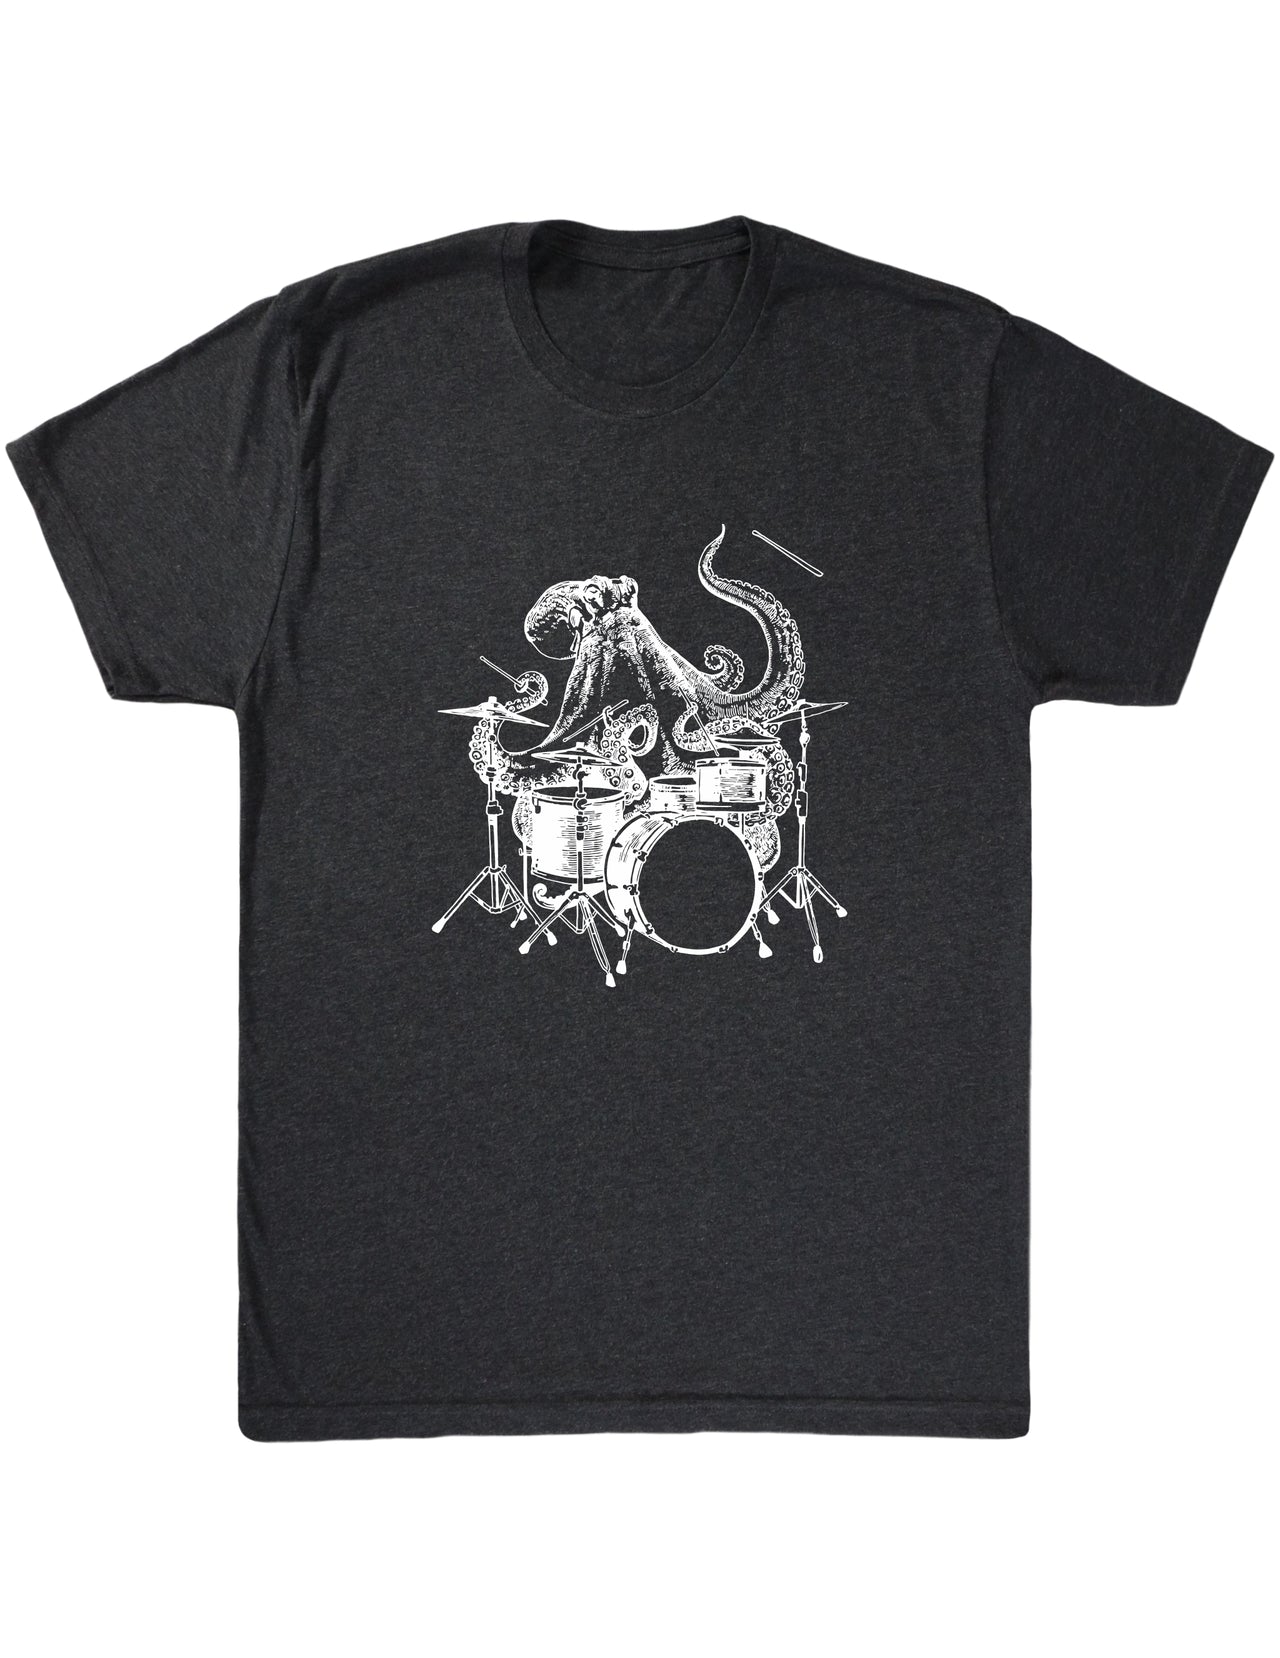 SEEMBO Octopus Playing Drums Funny Drummer Músico Banda de música Hombres Camiseta de tejido mixto